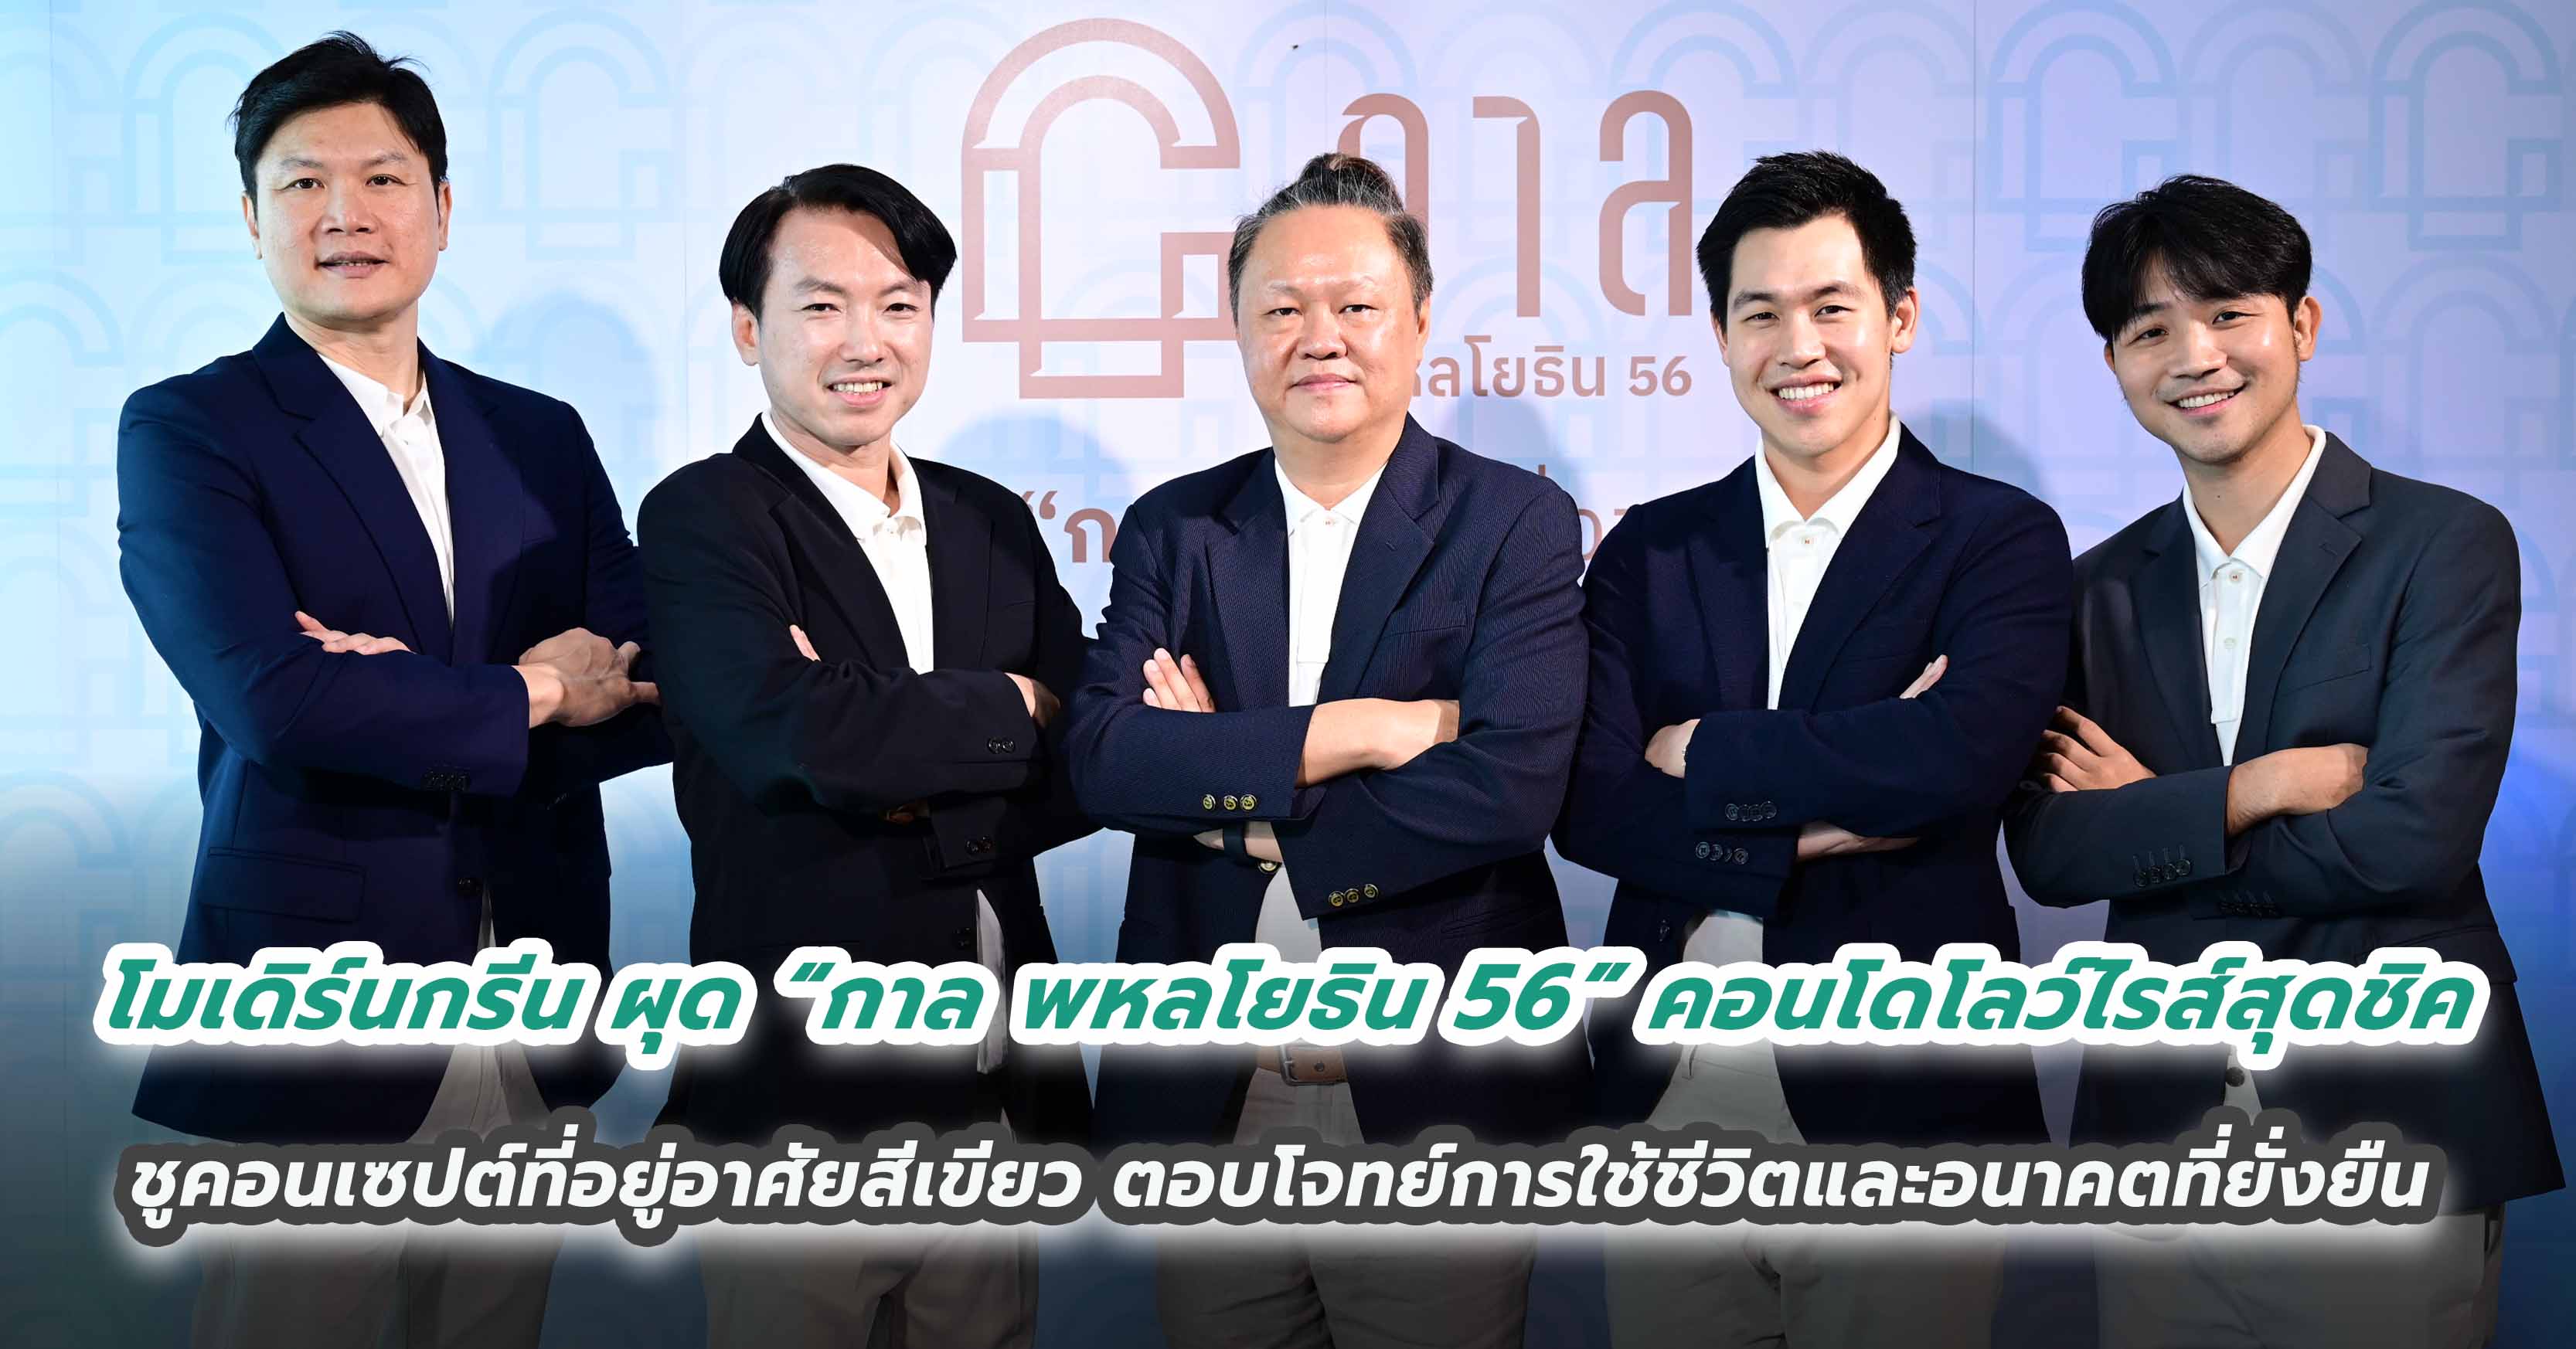 เอพี ไทยแลนด์ ชี้ 2567 ขยายพอร์ตไปต่อทั่วไทยกว่า 200 โครงการ ตั้งเป้ายอดขาย 57,000 ล้านบาท และเป้ารับรู้รายได้ที่ 53,700 ล้านบาท